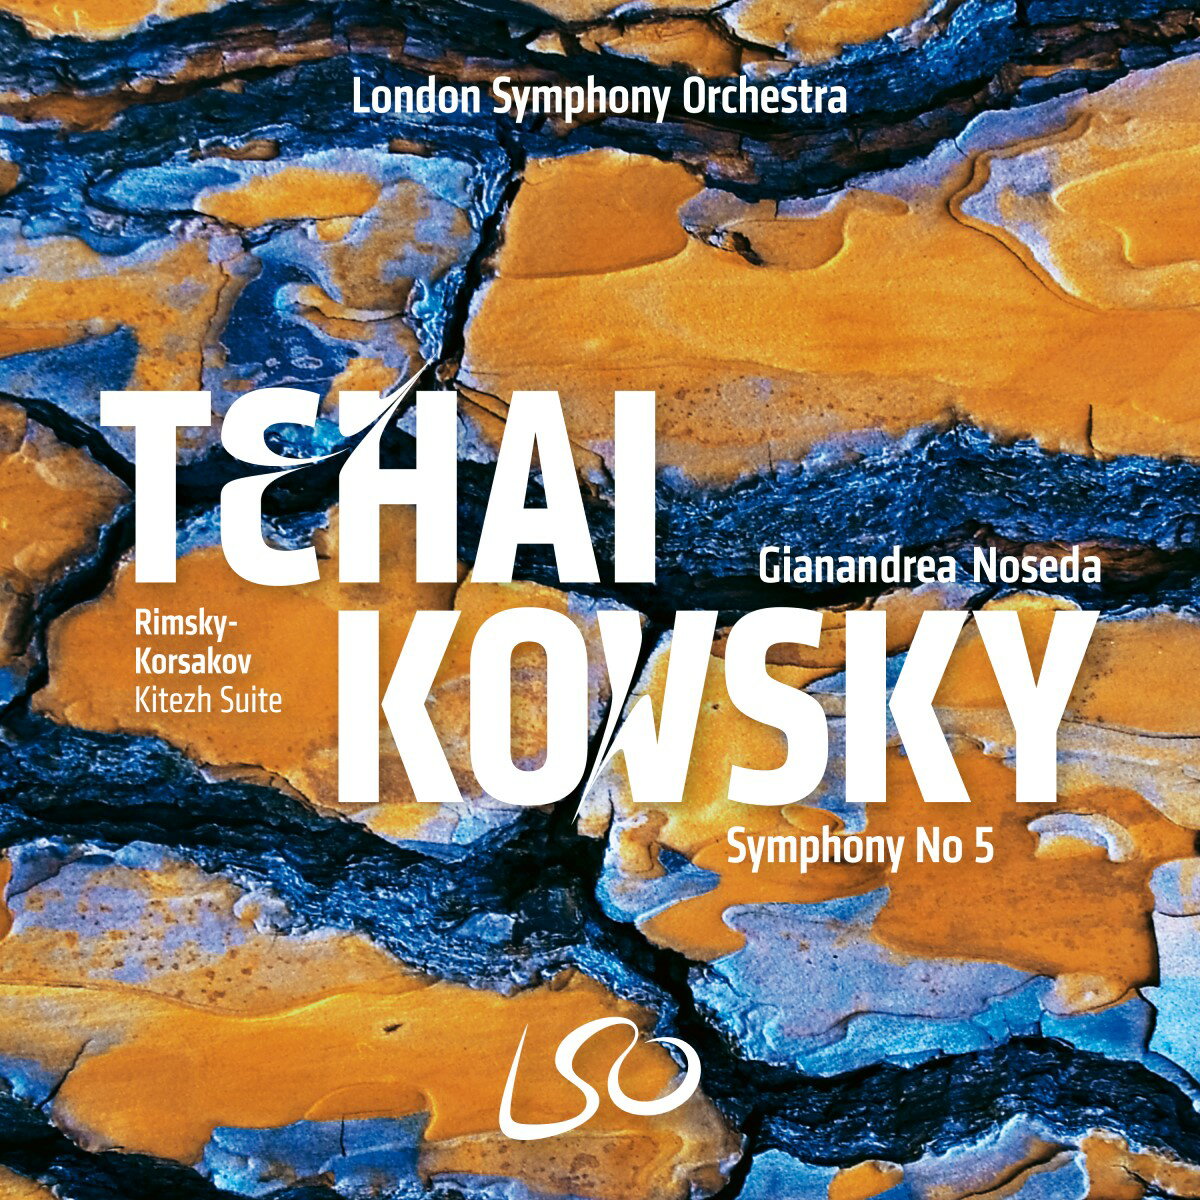 チャイコフスキー：交響曲第5番／ジャナンドレア・ノセダ、ロンドン交響楽団